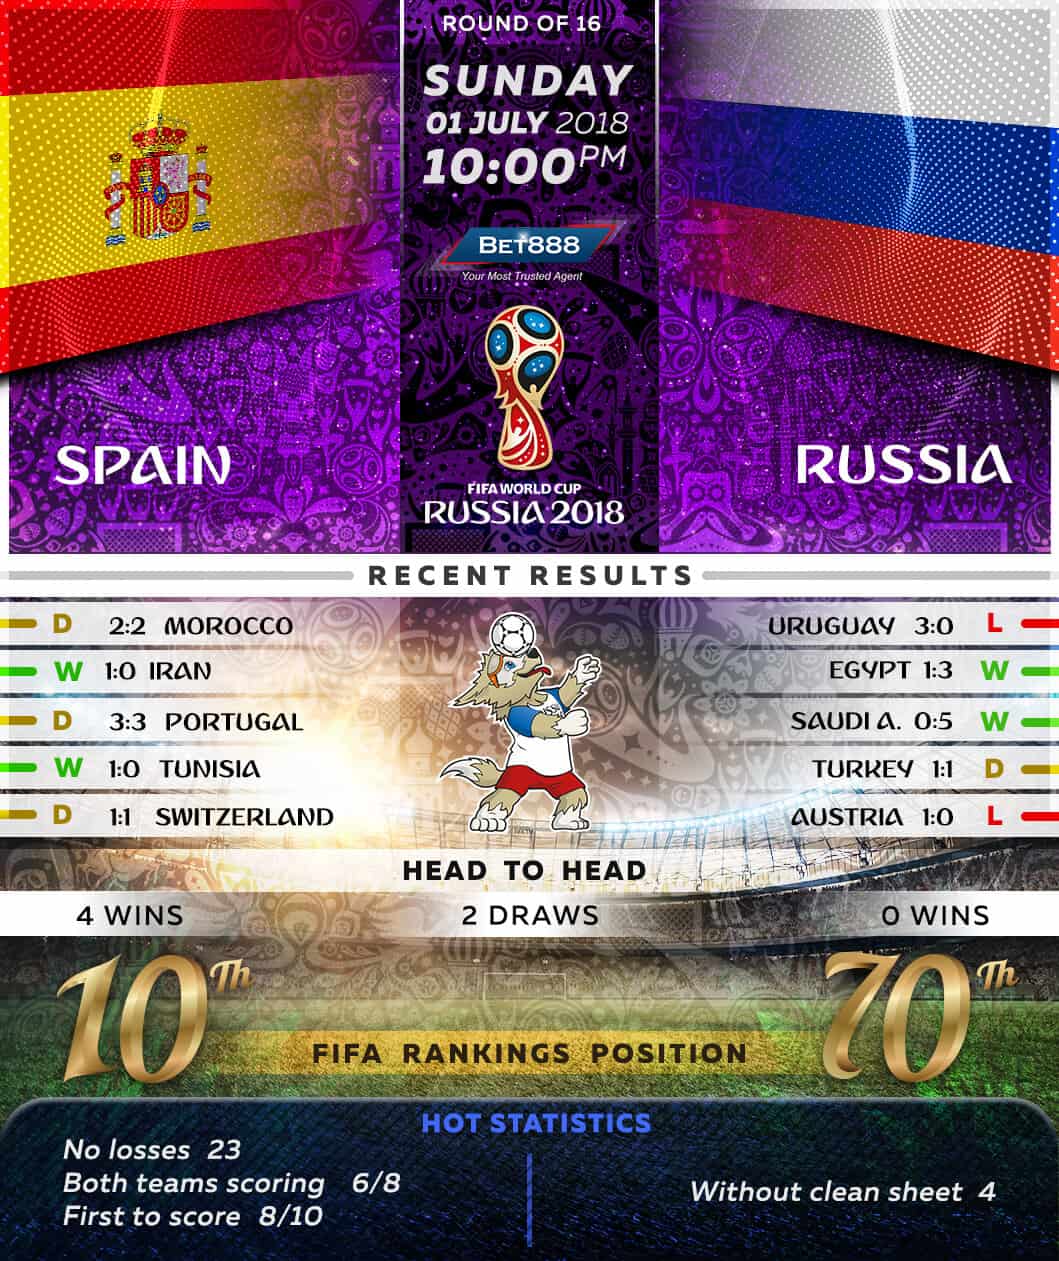 Spain vs Russia 01/07/18